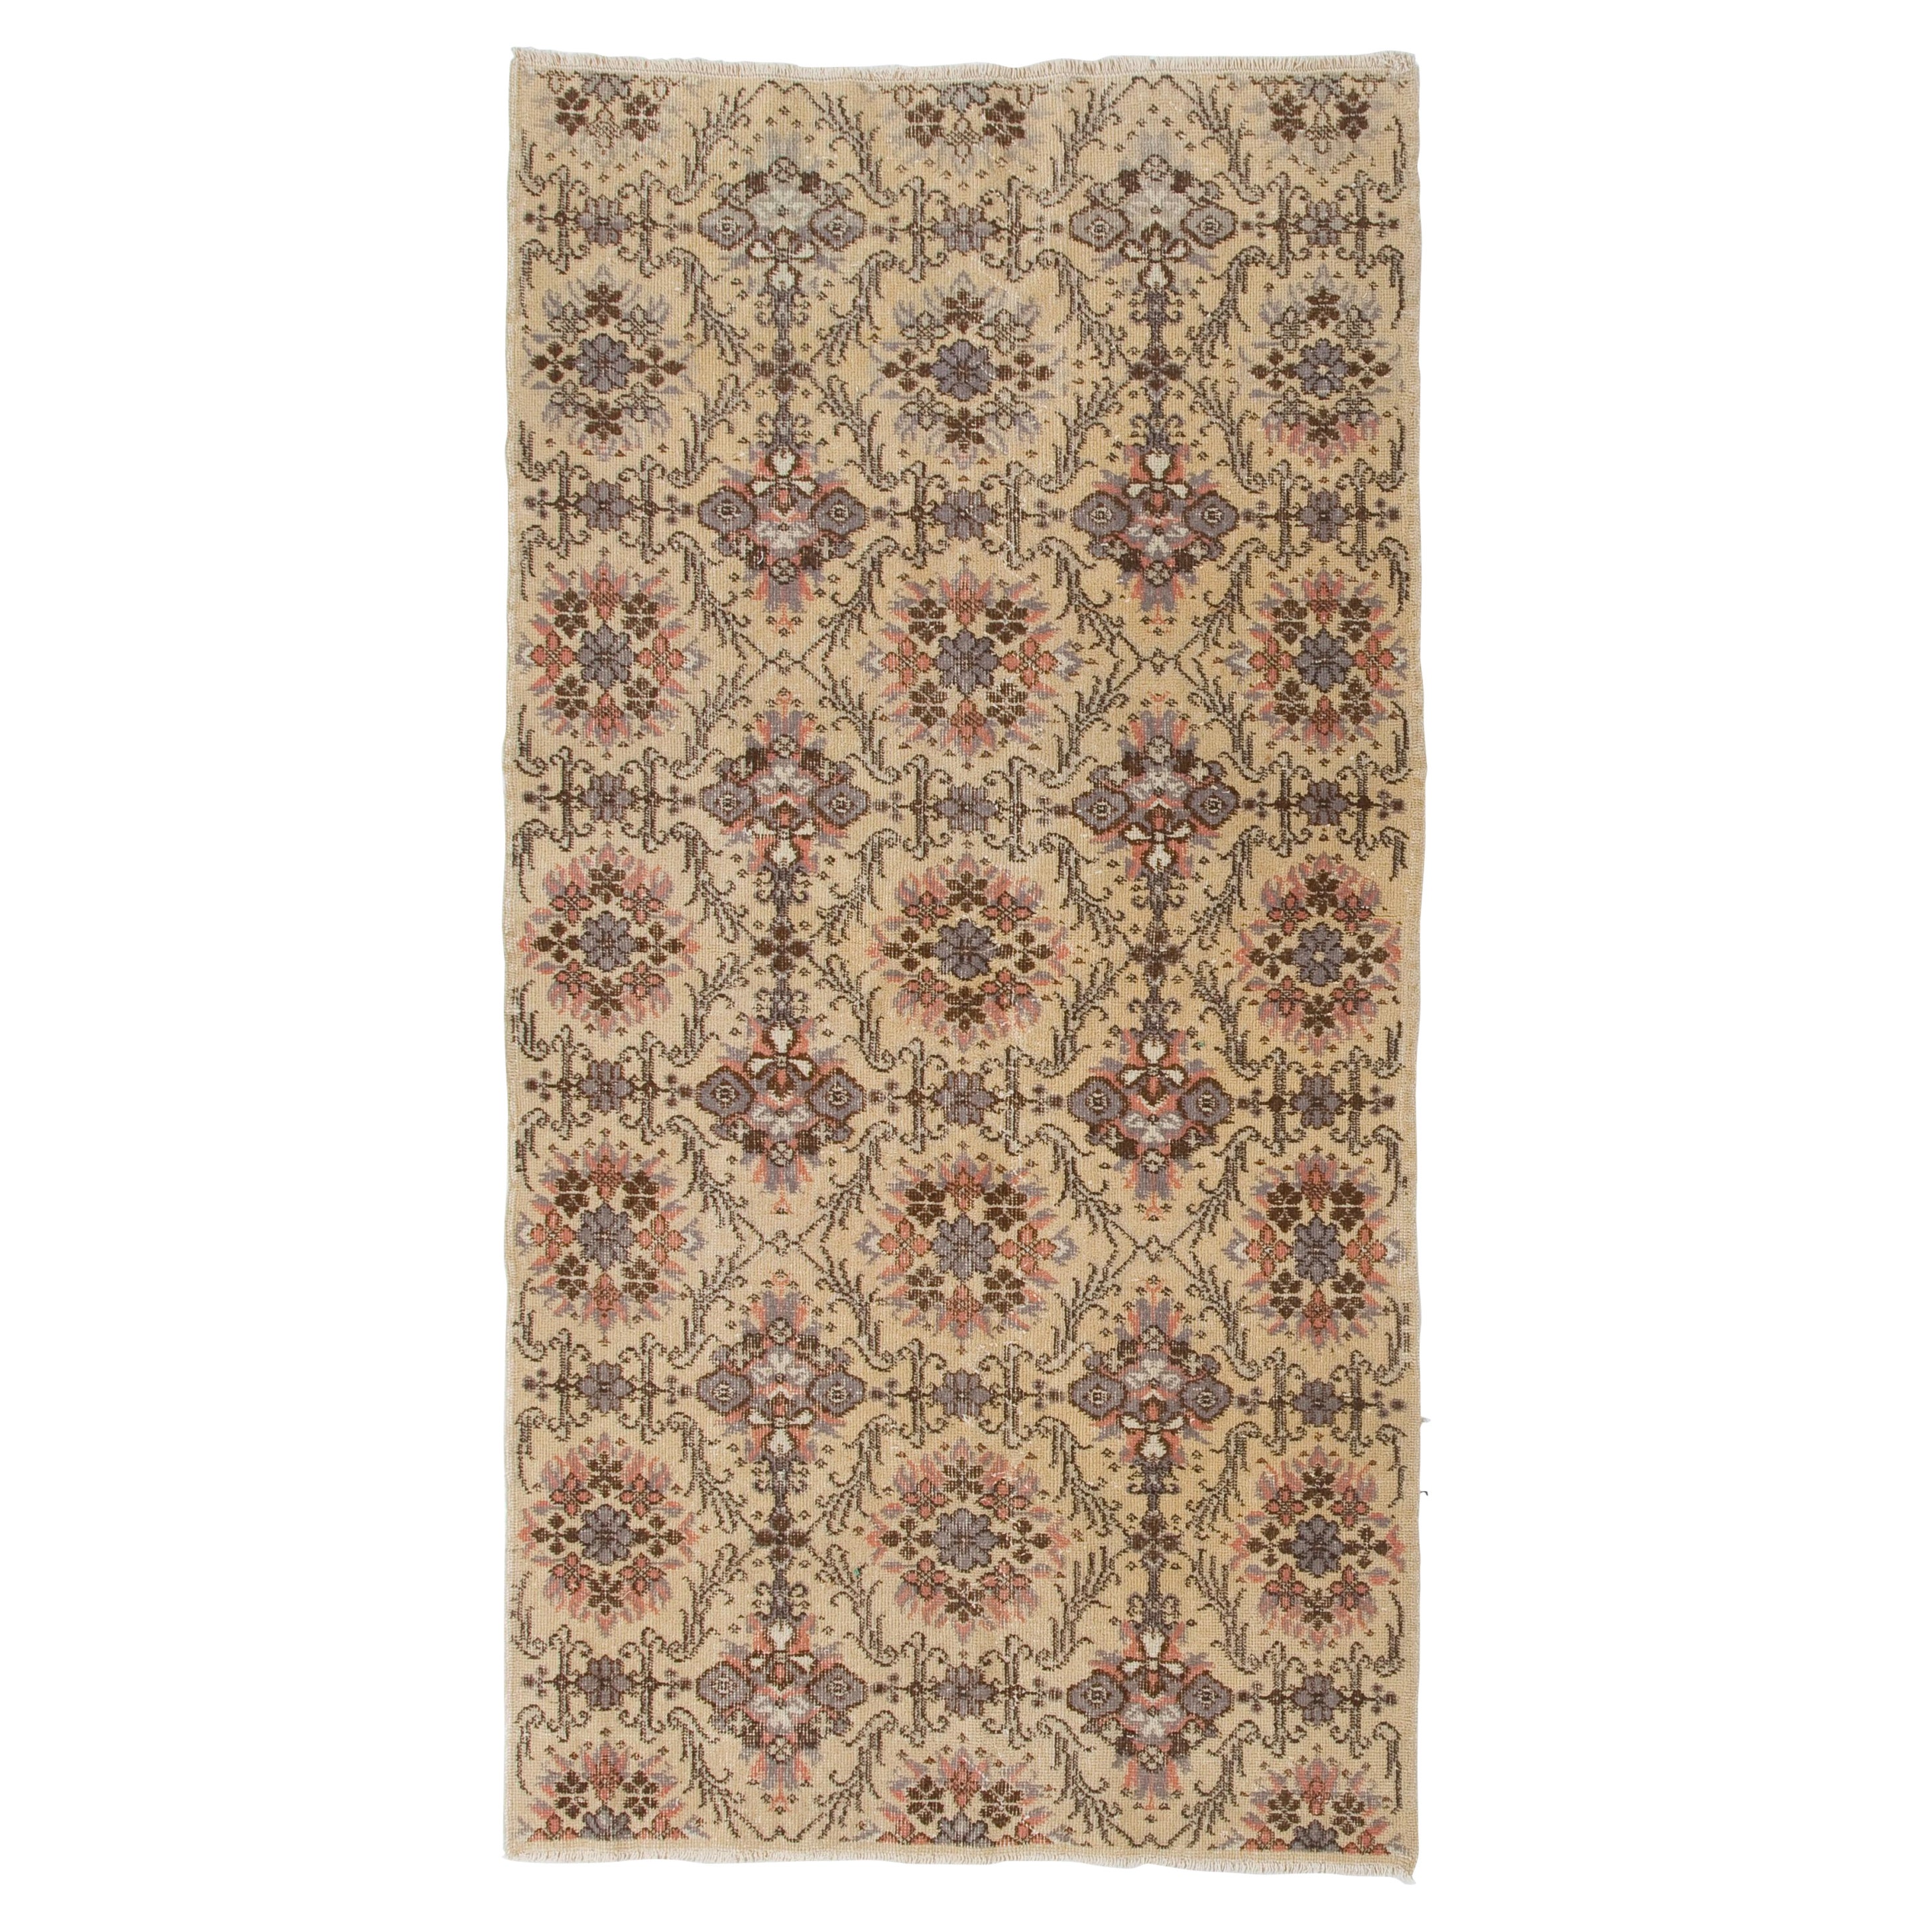 3.8x7.3 ft Hand-Knotted Vintage Floral Design Turkish Rug, Woolen Floor Covering For Sale